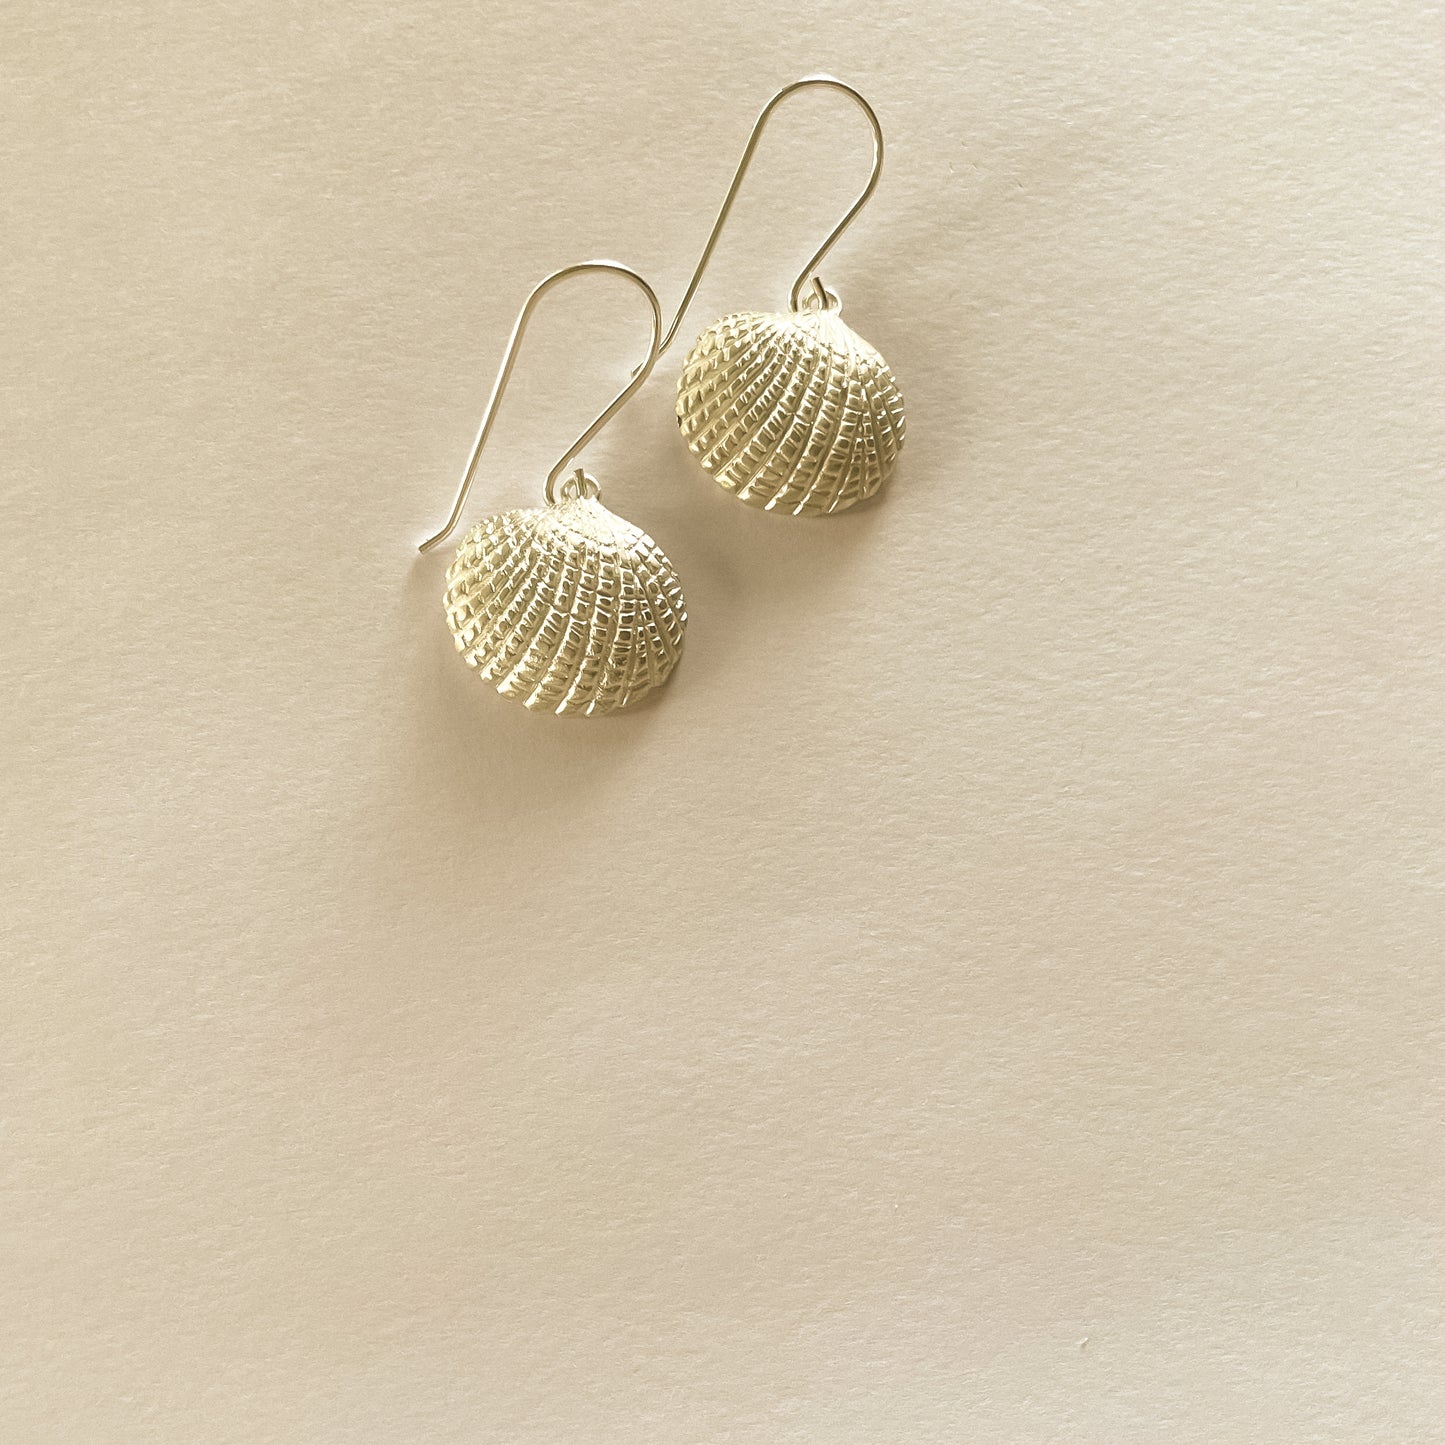 Elsie Sea Shell earrings